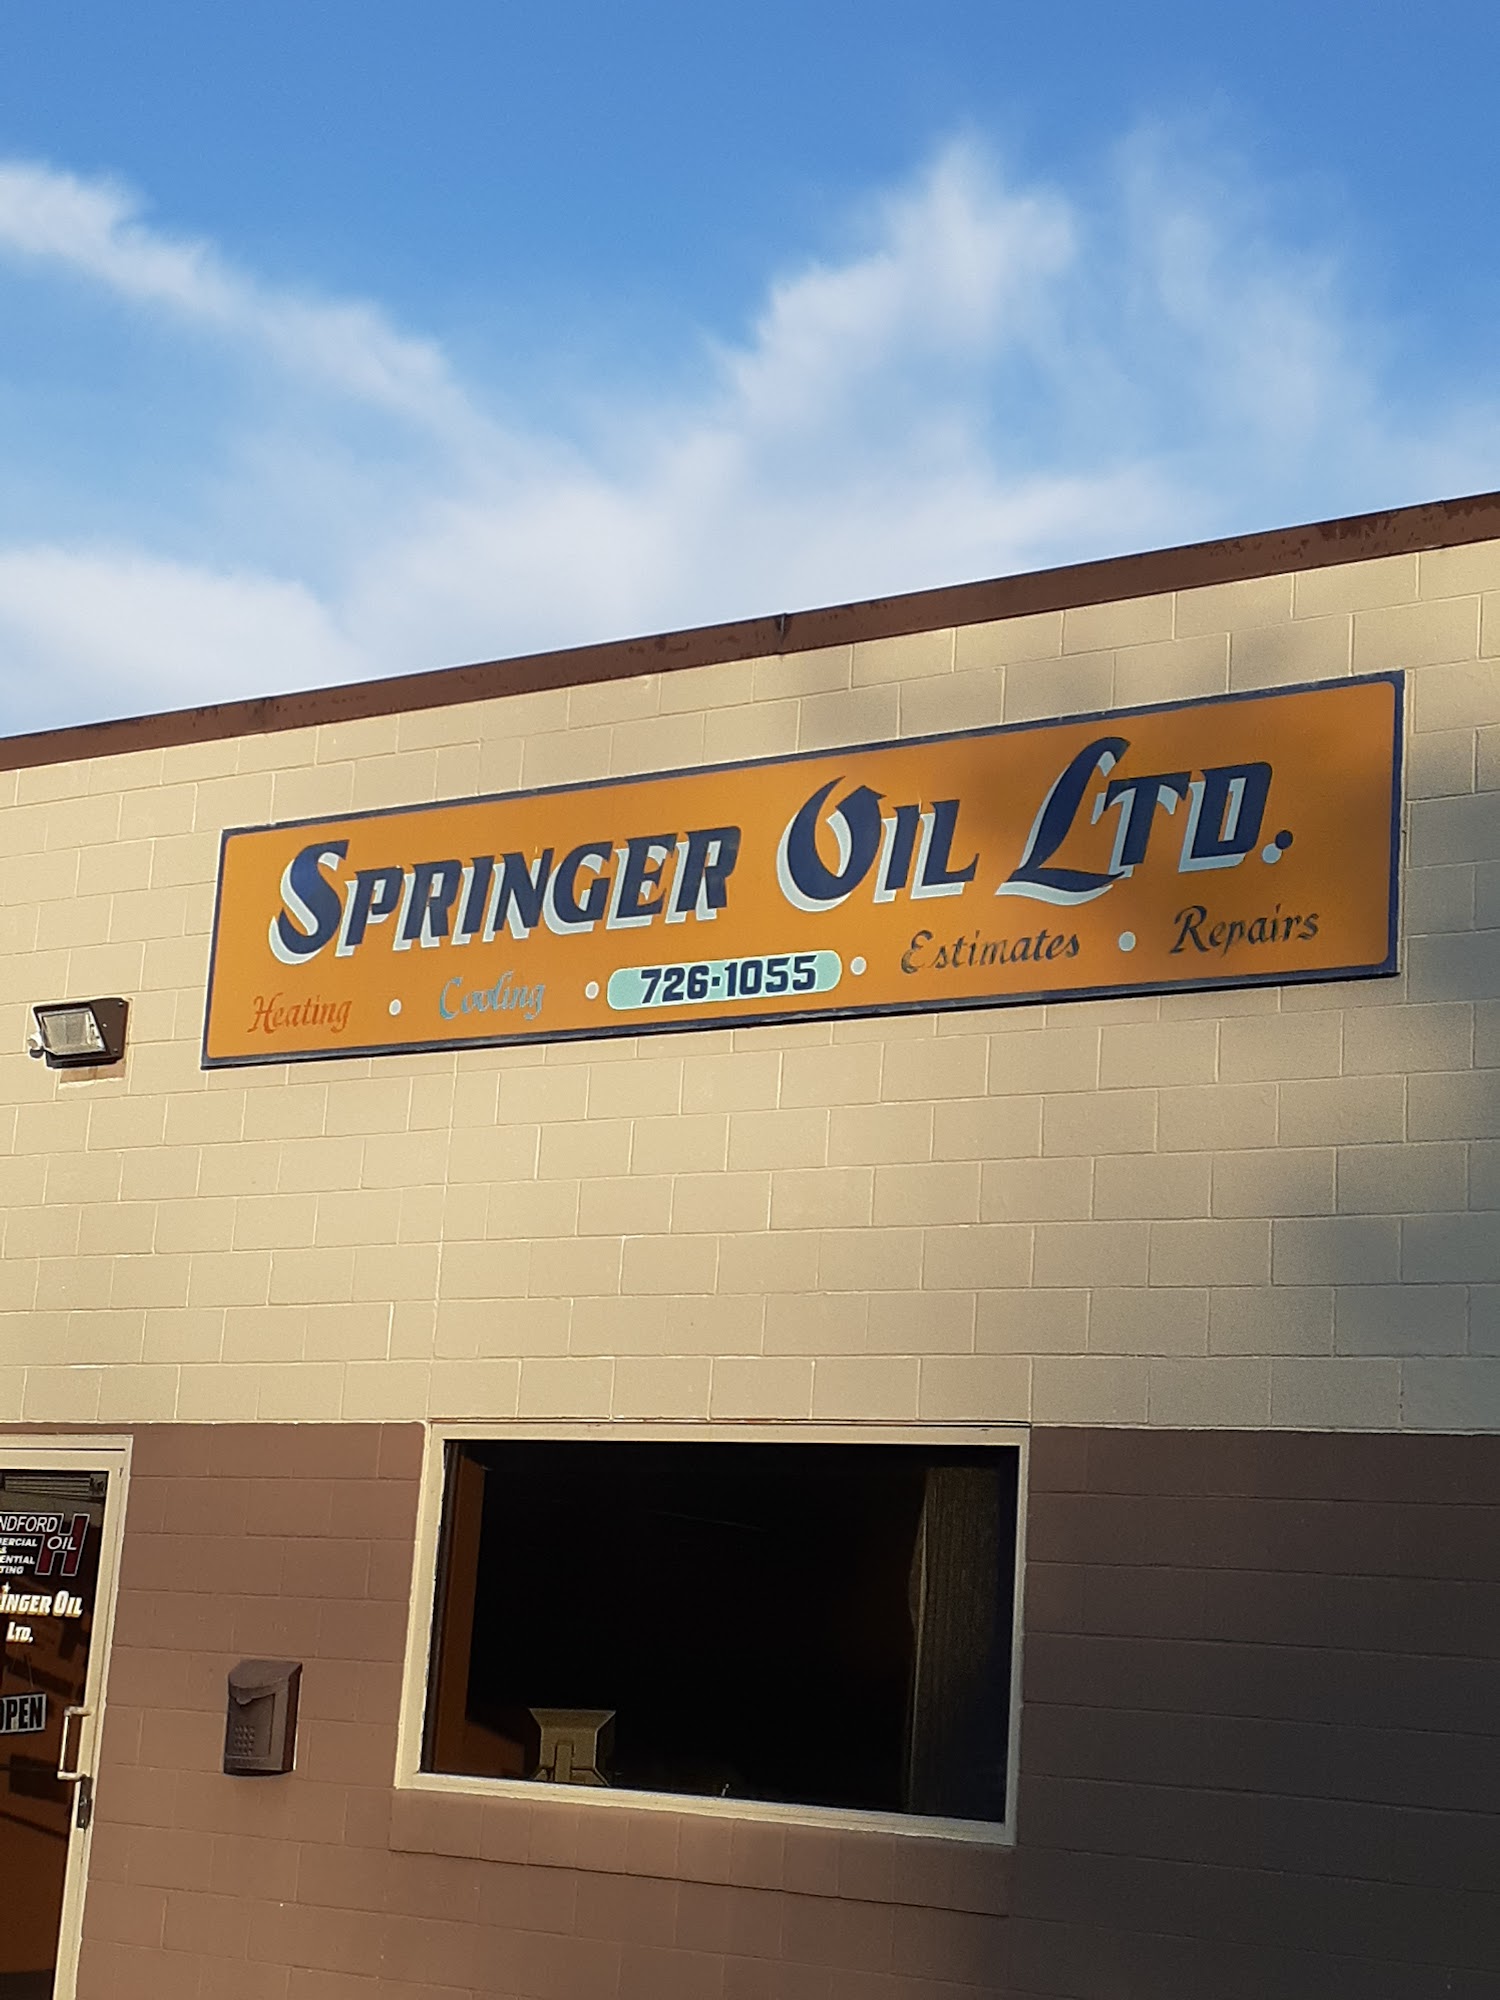 Springer Oil Co